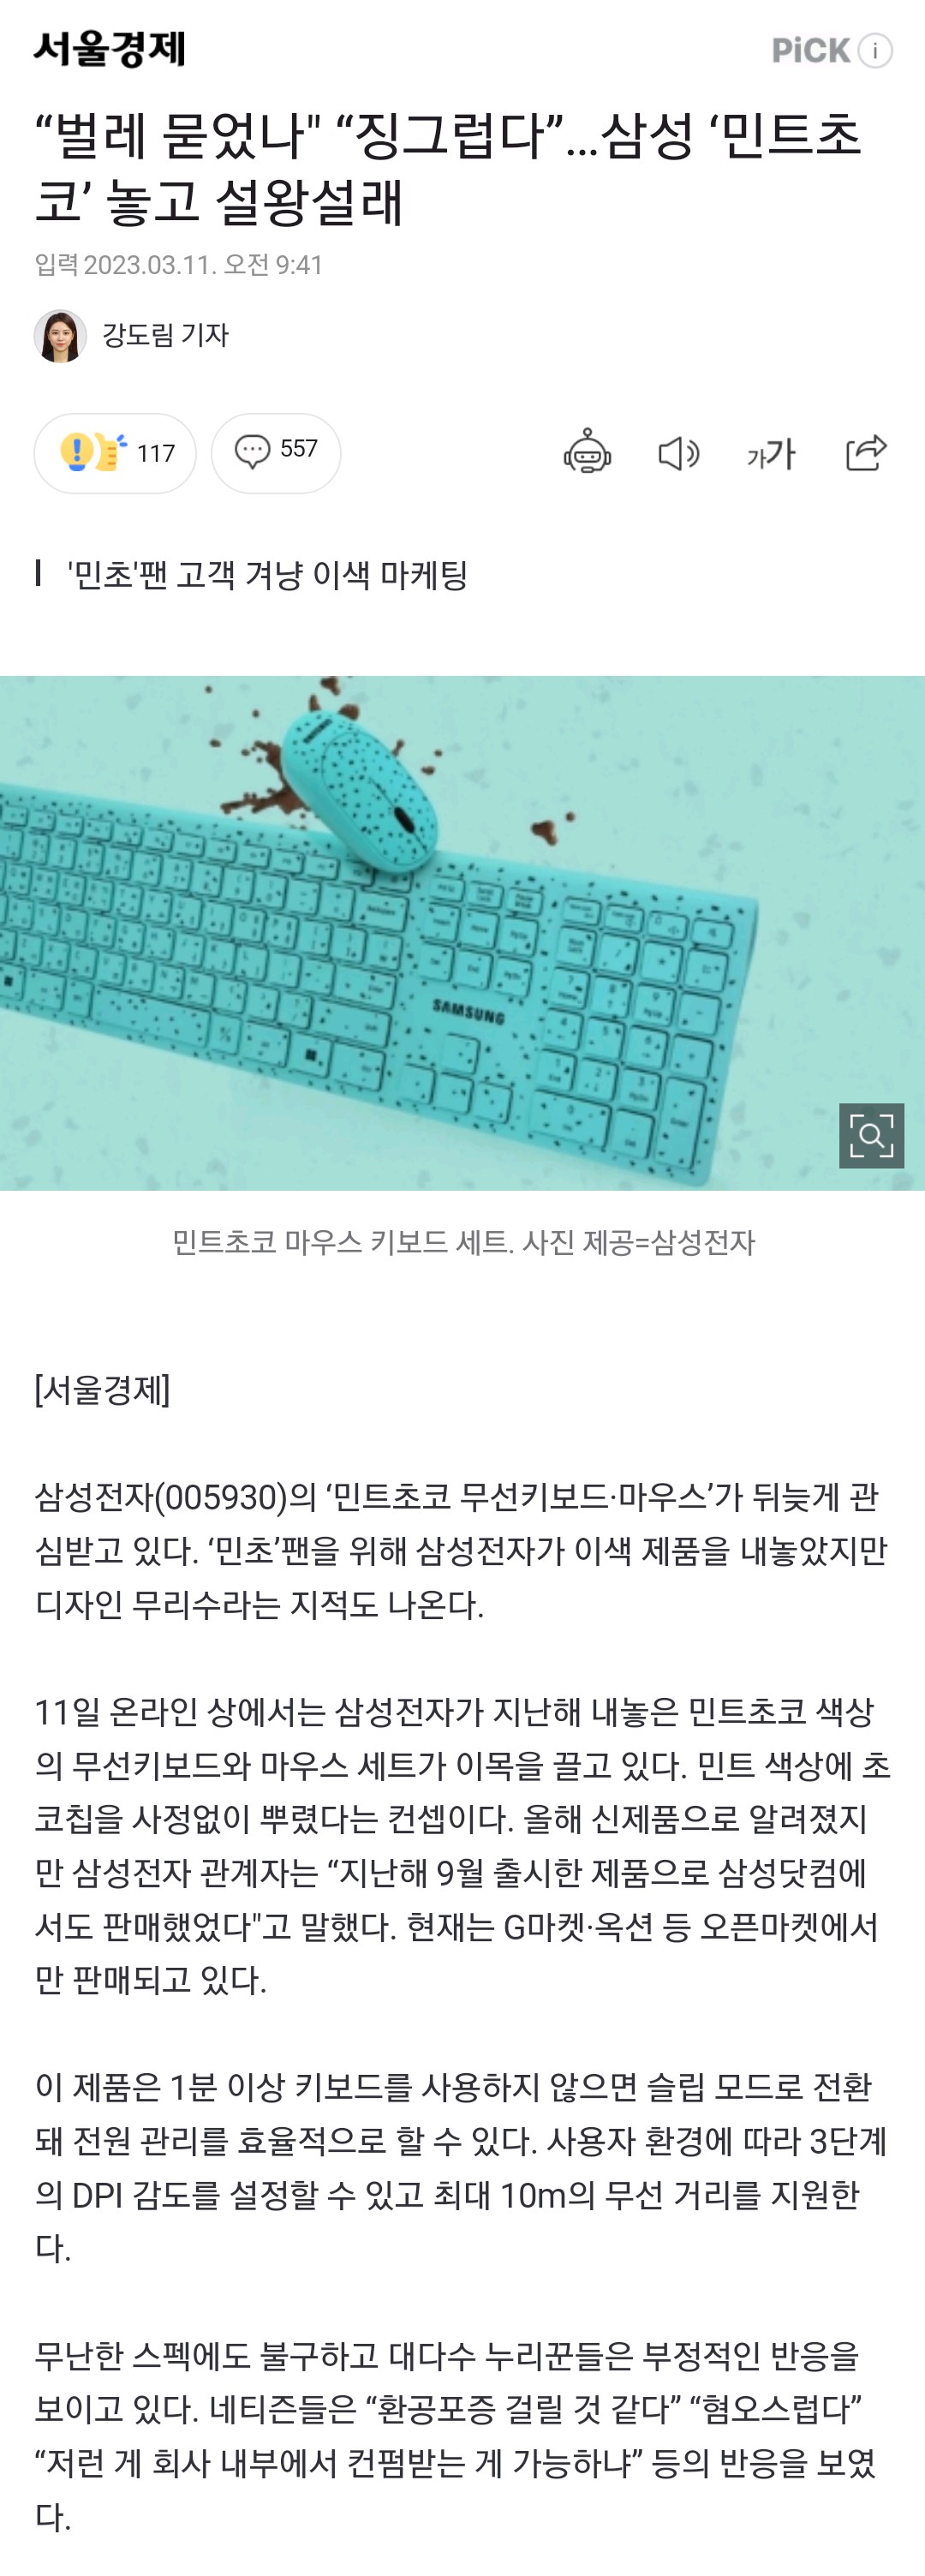 삼성이 내놓은 민트초코 키보드 논란